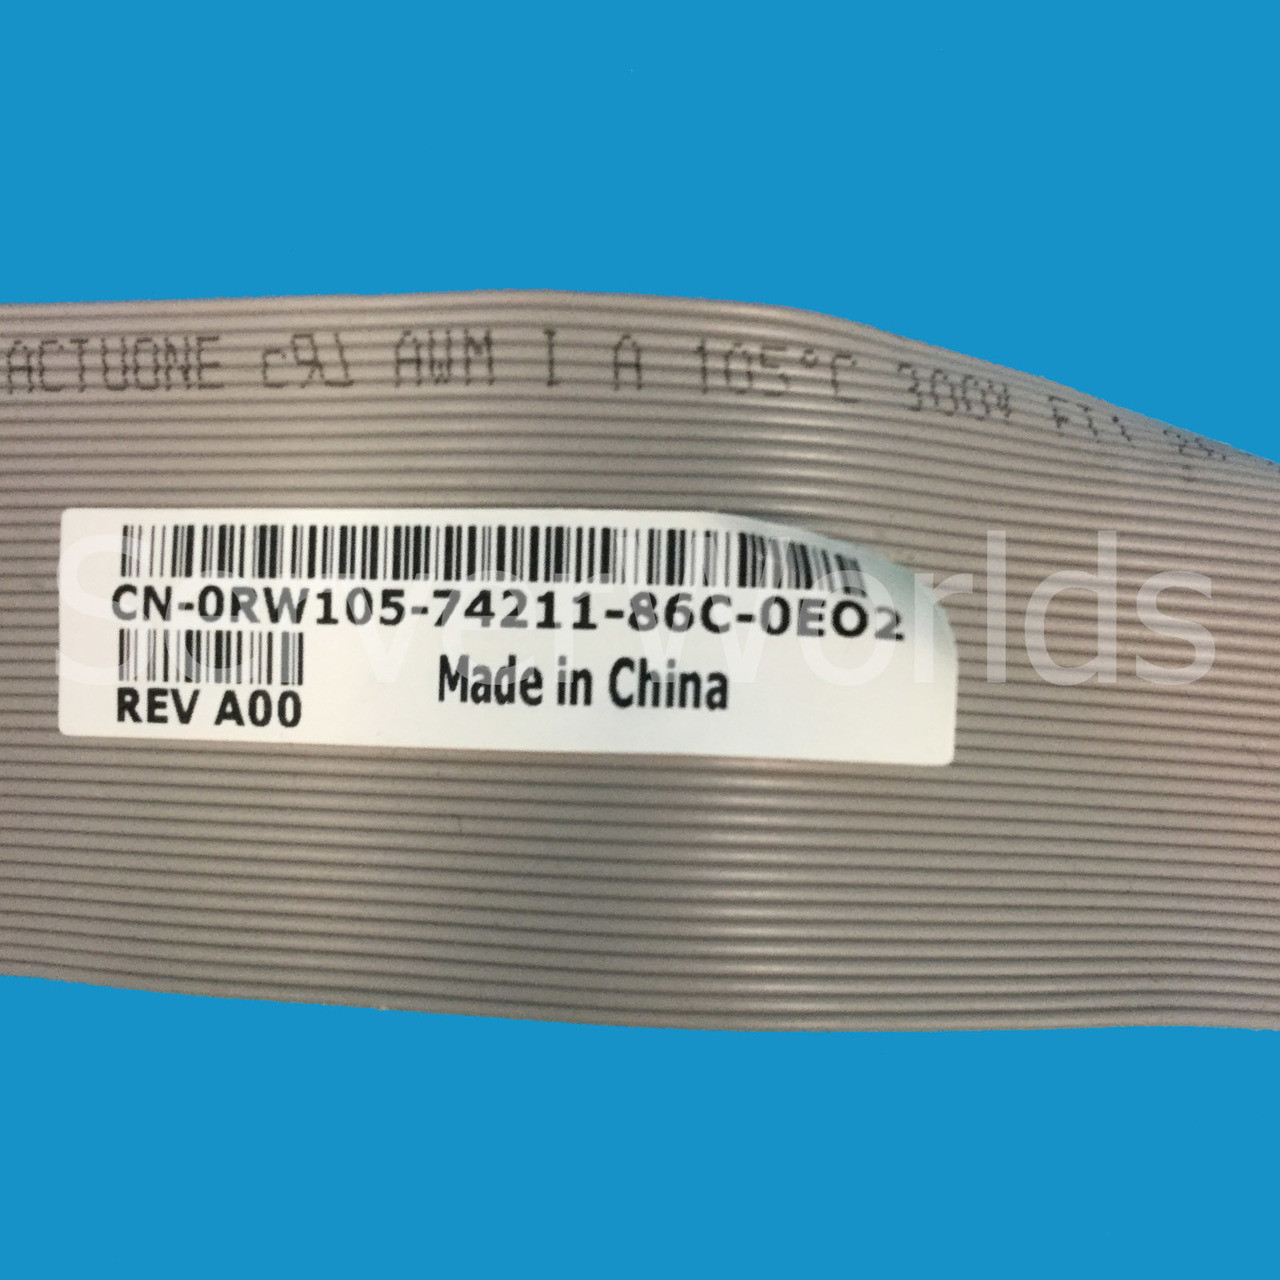 Dell RW105 Precison T3400 I/O Panel Cable 